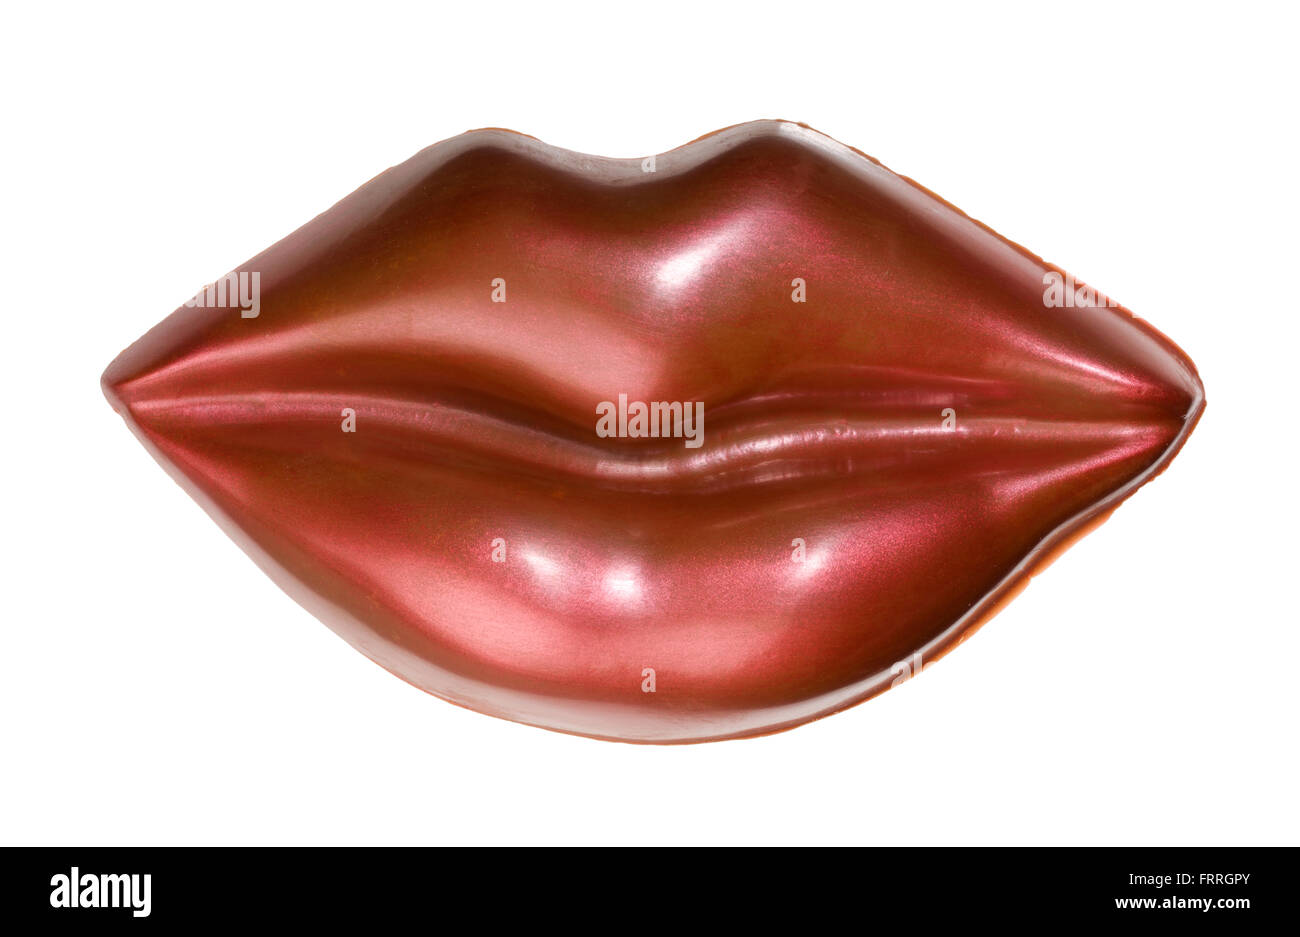 Schokolade Lippen. Rot glänzende Lippen aus dekorierten Milchschokolade hergestellt. Geformte Schokolade Geschenk-Artikel. Stockfoto